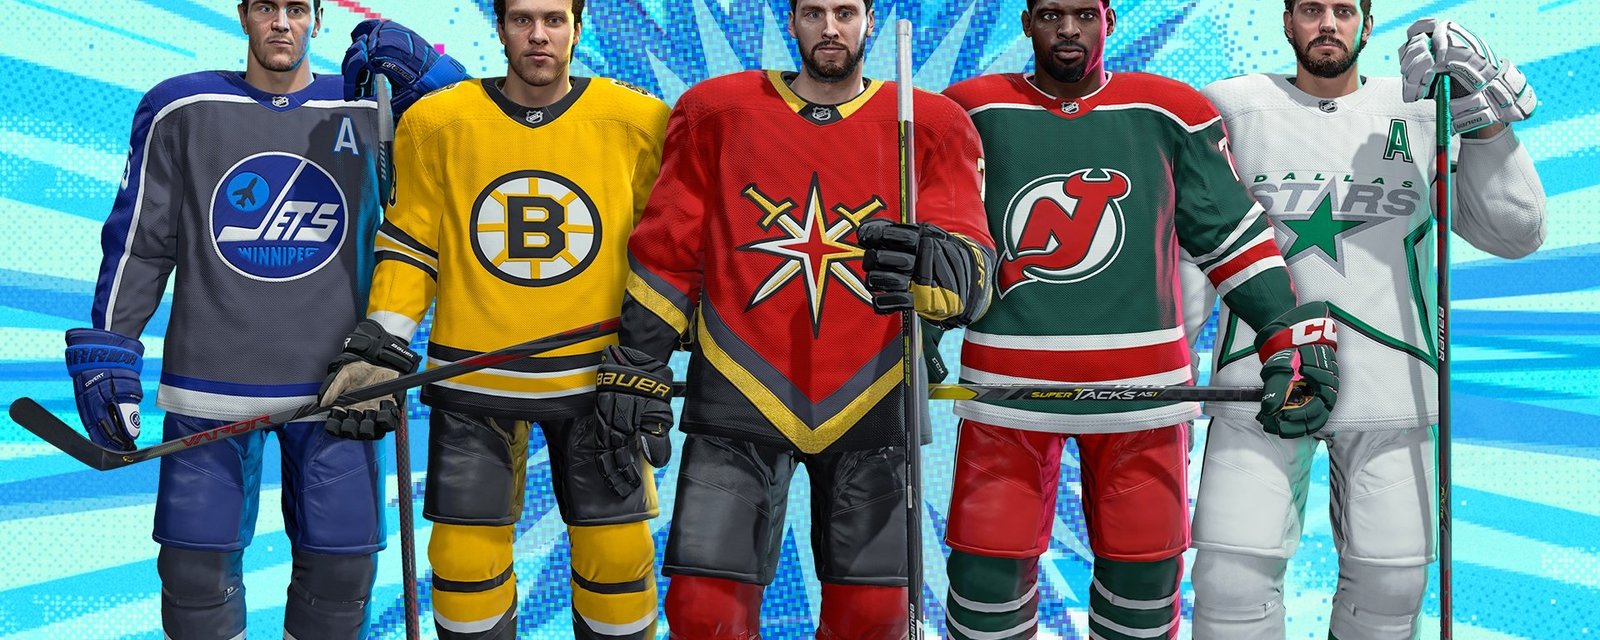 EA Sports ajoute les chandails Reverse Retro dans son NHL 21!